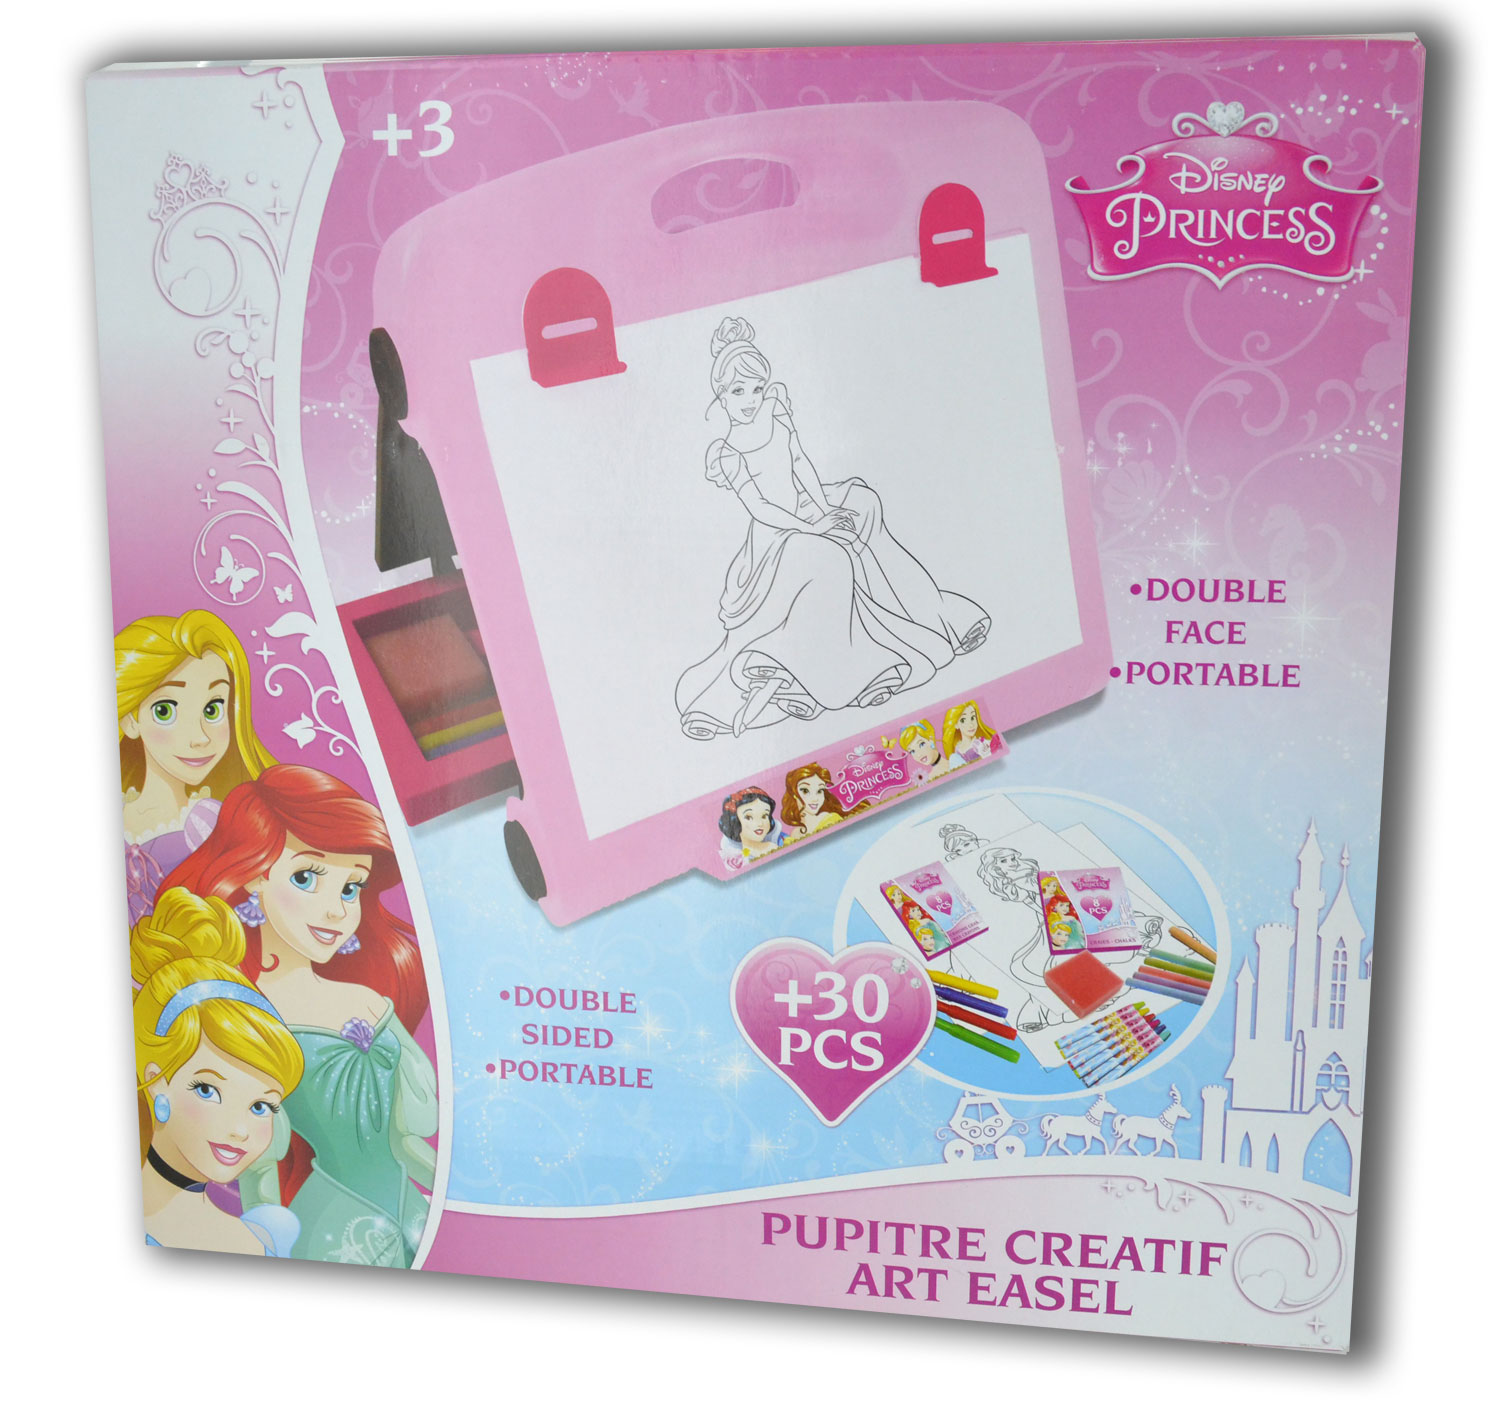 Tablita pentru desenat 2 in 1 IDL, Princess Minnie, 30 Piese, Dezvolta dexteritatea manuala a copilului, imaginatia si creativitatea, Dotata cu 2 suprafete diferite si echipata cu accesorii simbolice